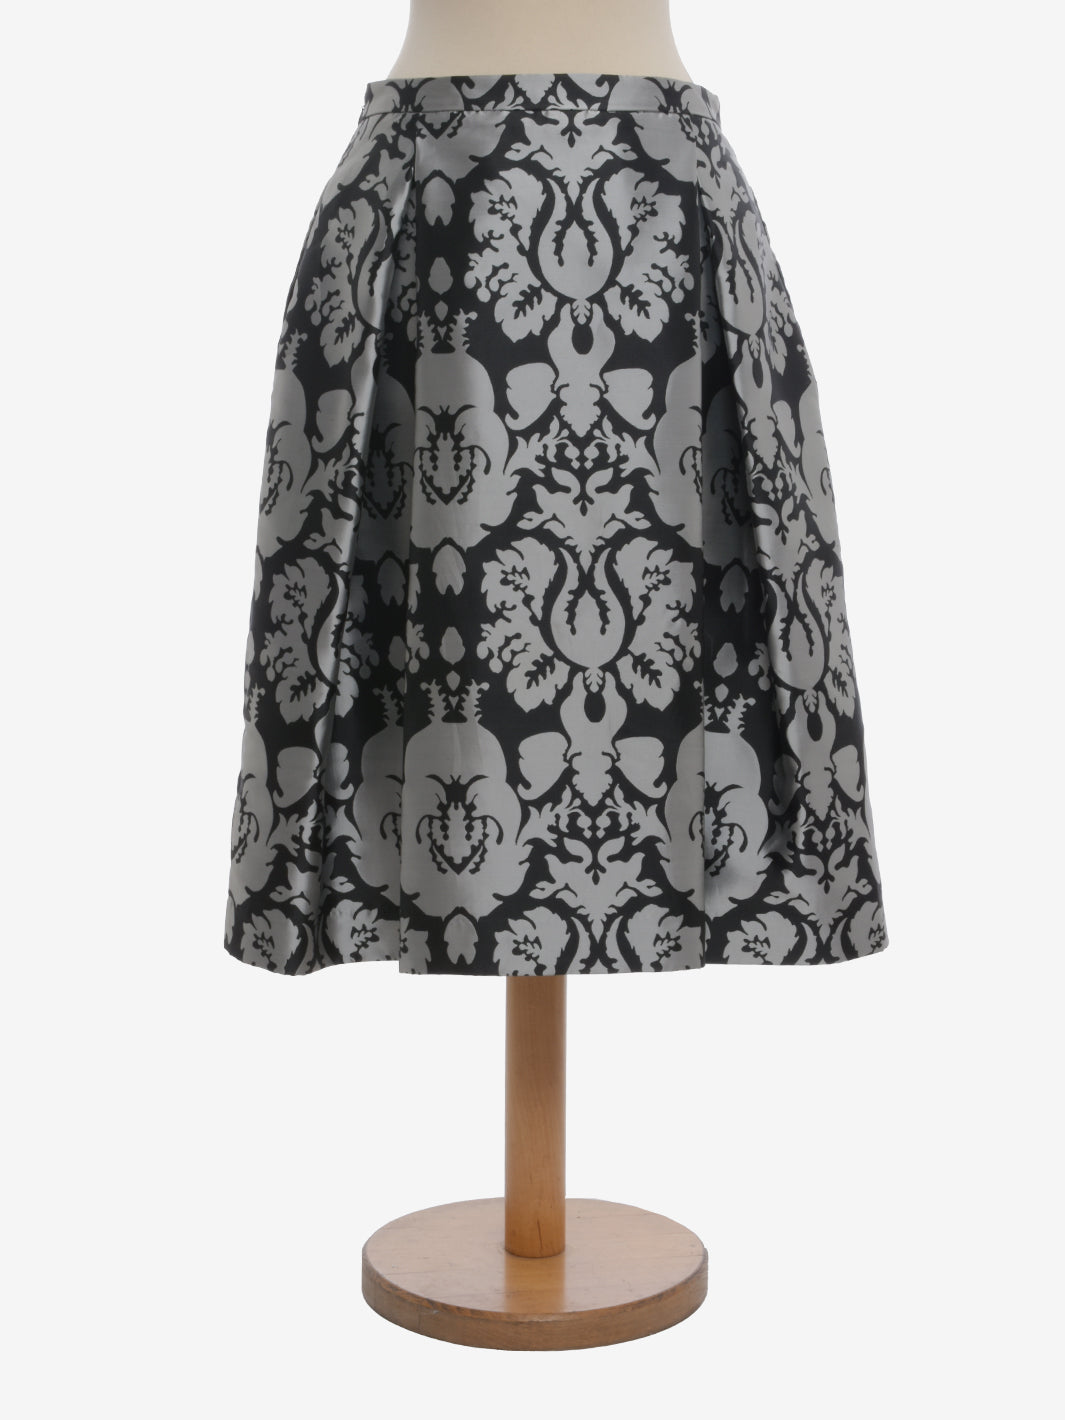 Vintage Flared Patterned Skirt